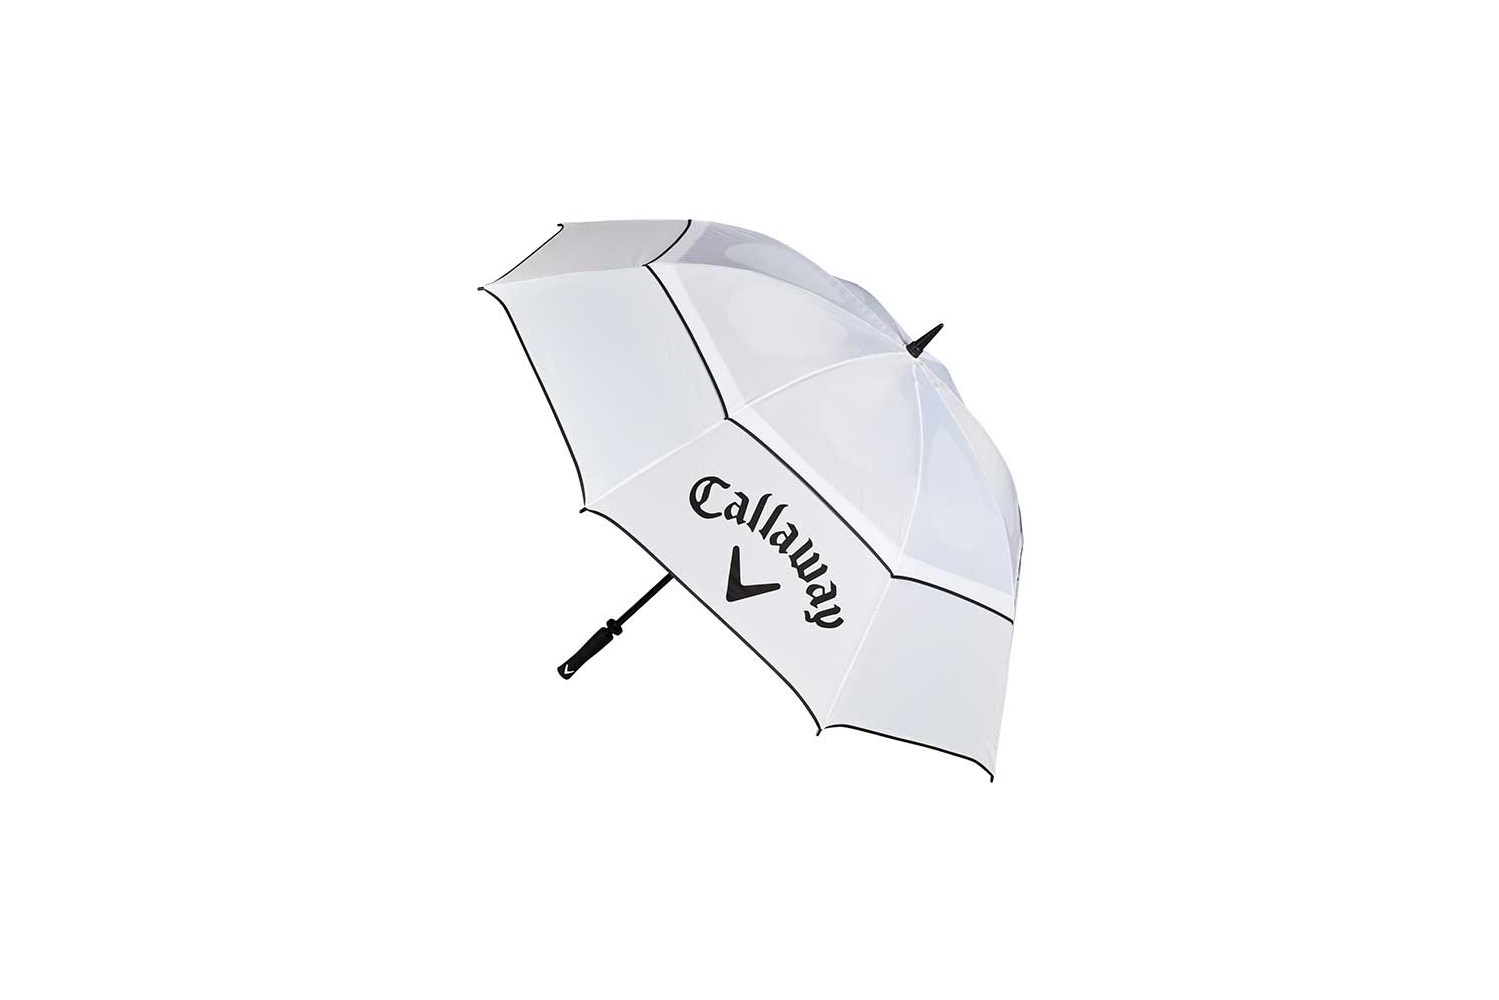 Callaway Shield 64" Umbrella White/Black